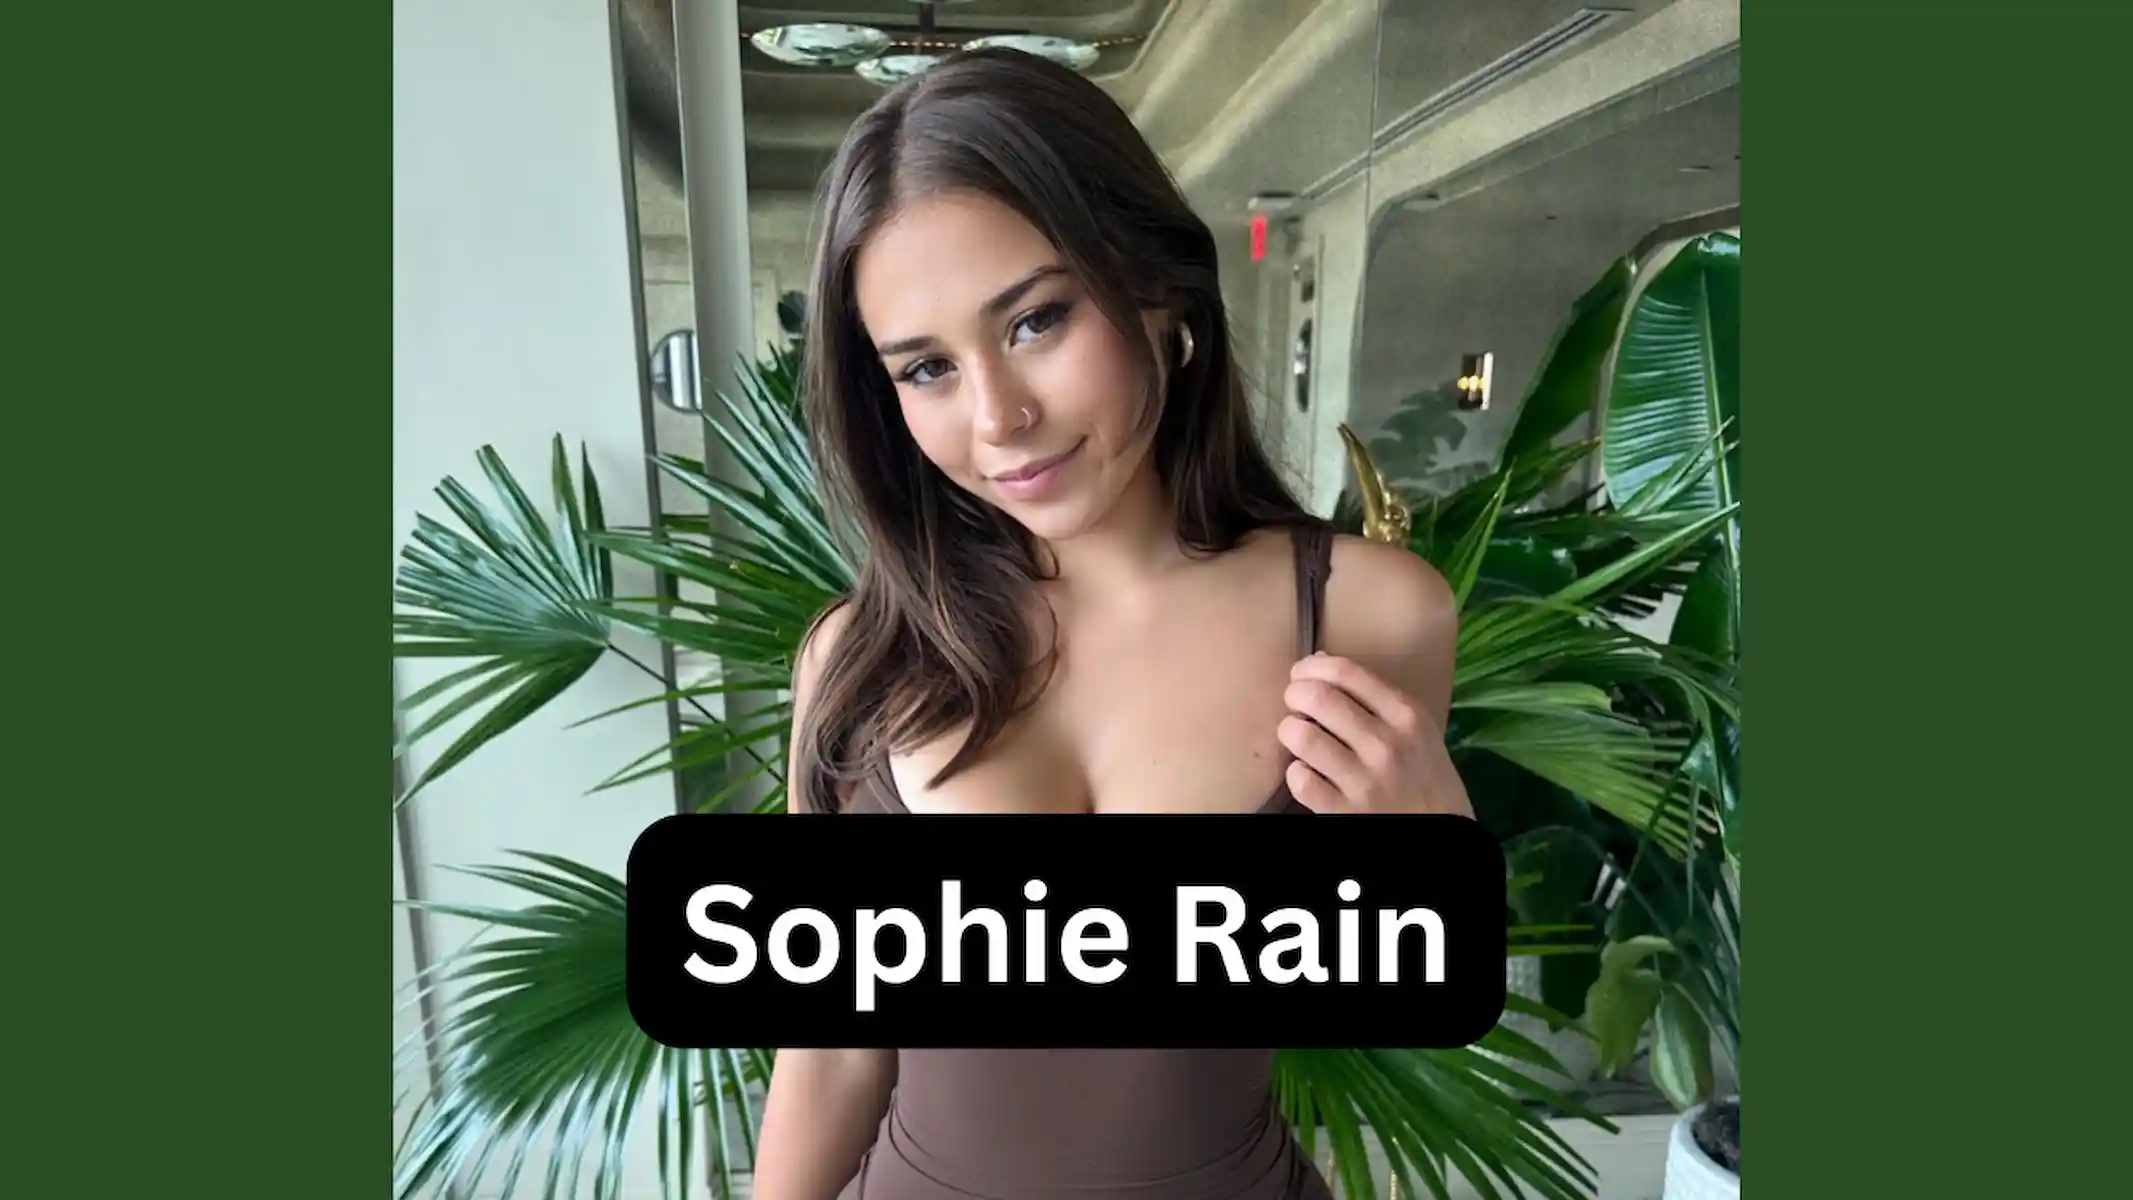 Sophie Rain Age